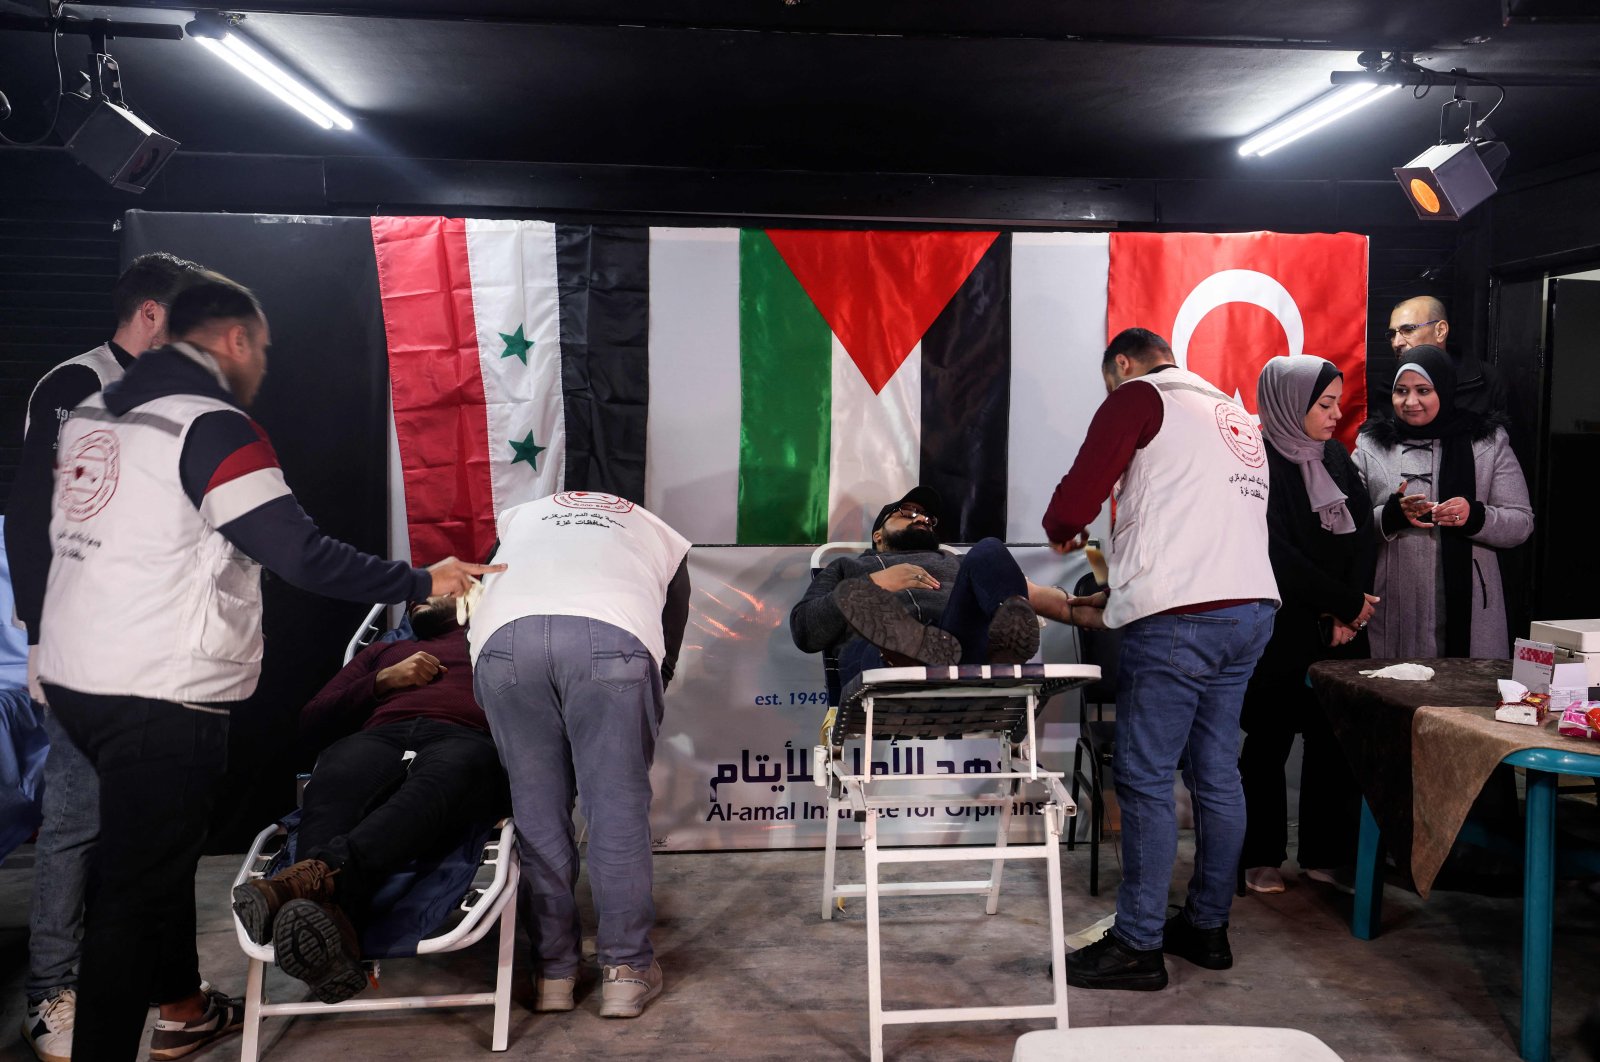 Karunia kehidupan: Warga Gaza menyumbangkan darah untuk membantu korban gempa Turki, Suriah